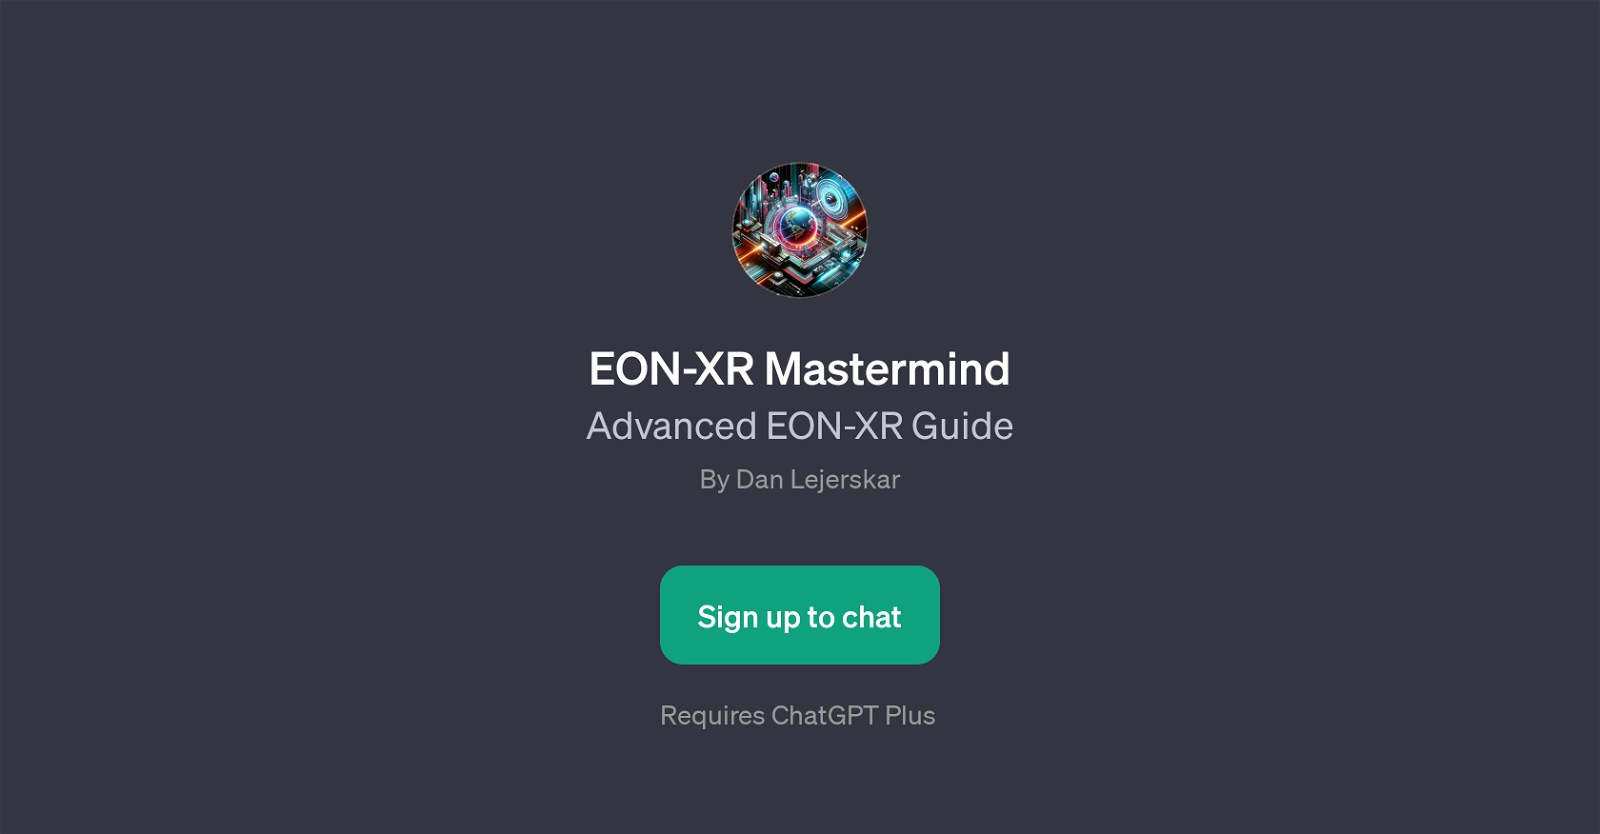 EON-XR Mastermind website